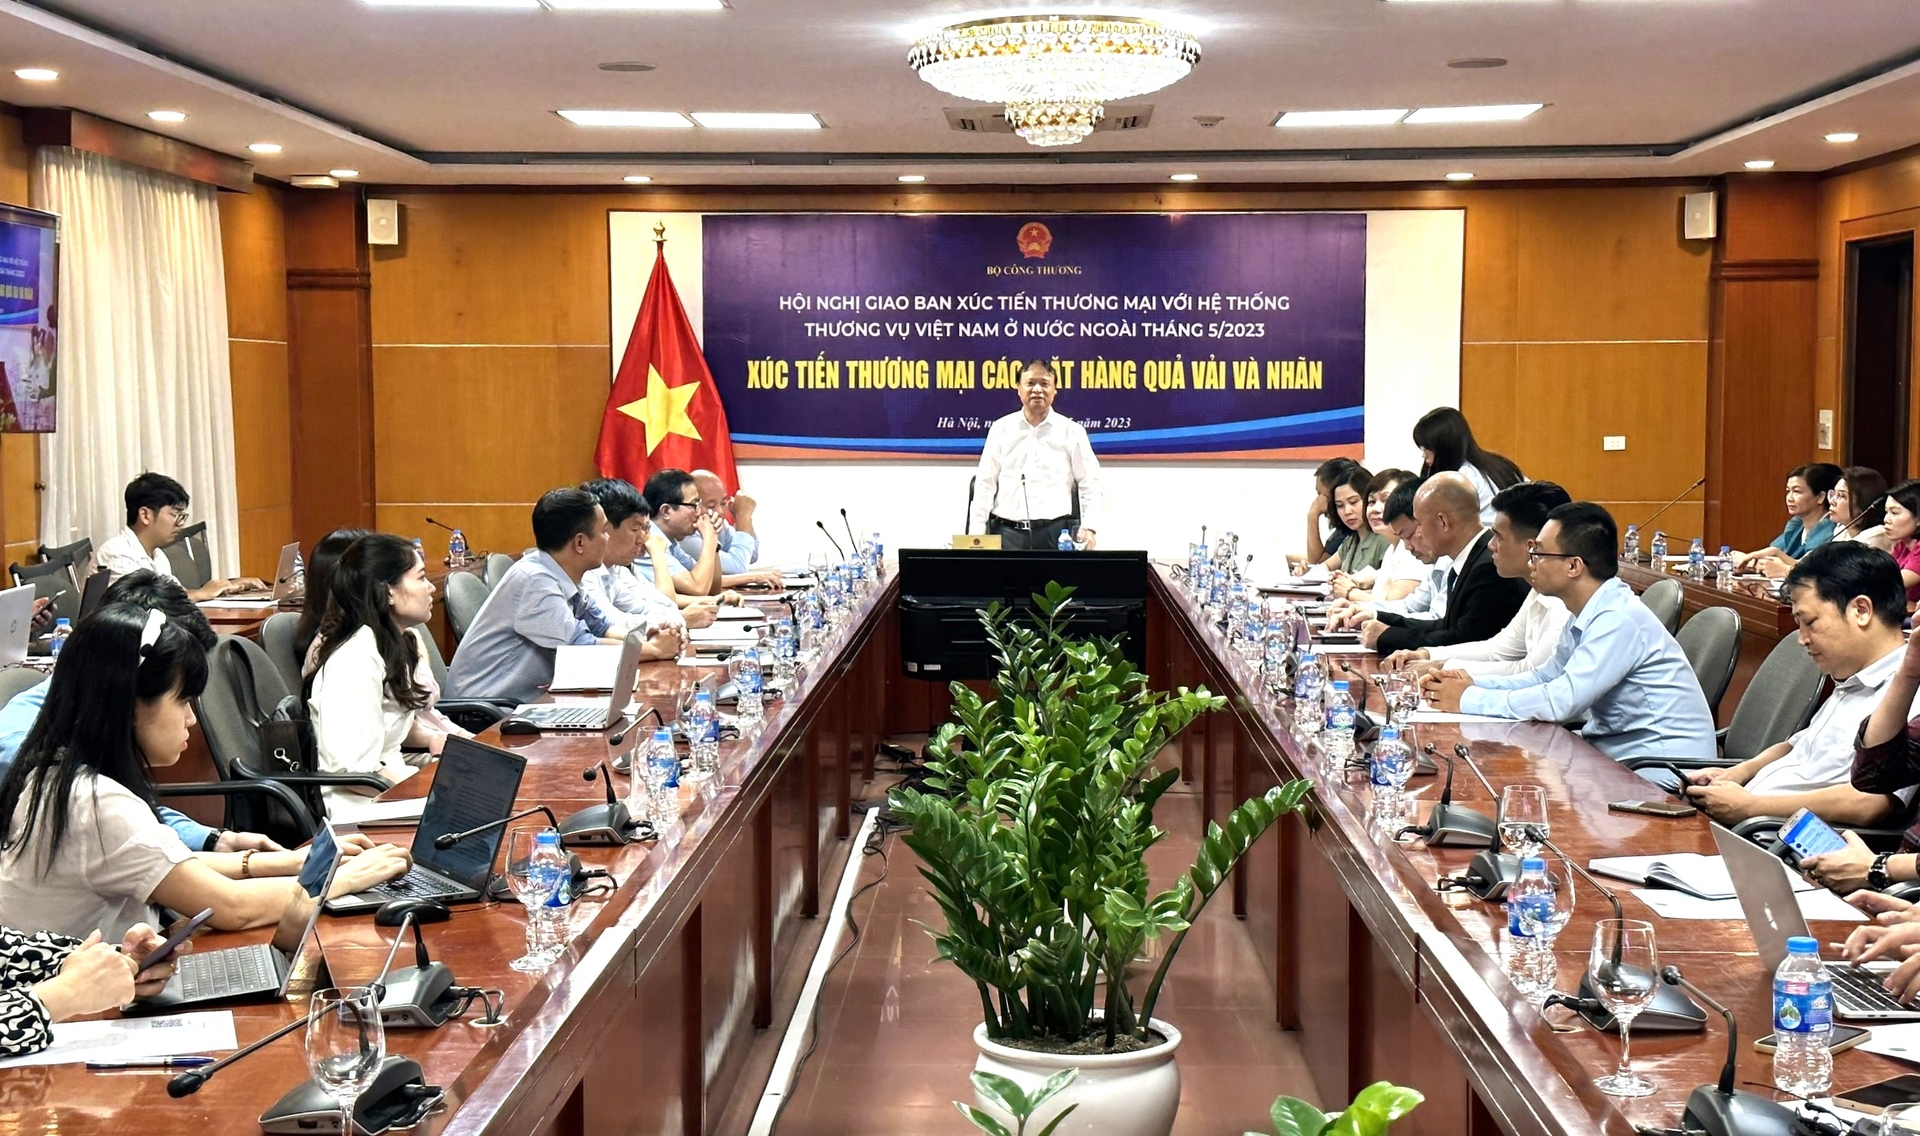 Hội nghị giao ban Xúc tiến thương mại với hệ thống Thương vụ Việt Nam ở nước ngoài tháng 5/2023 về chủ đề 'Xúc tiến thương mại các mặt hàng quả vải và nhãn'. Ảnh: Quang Linh. 